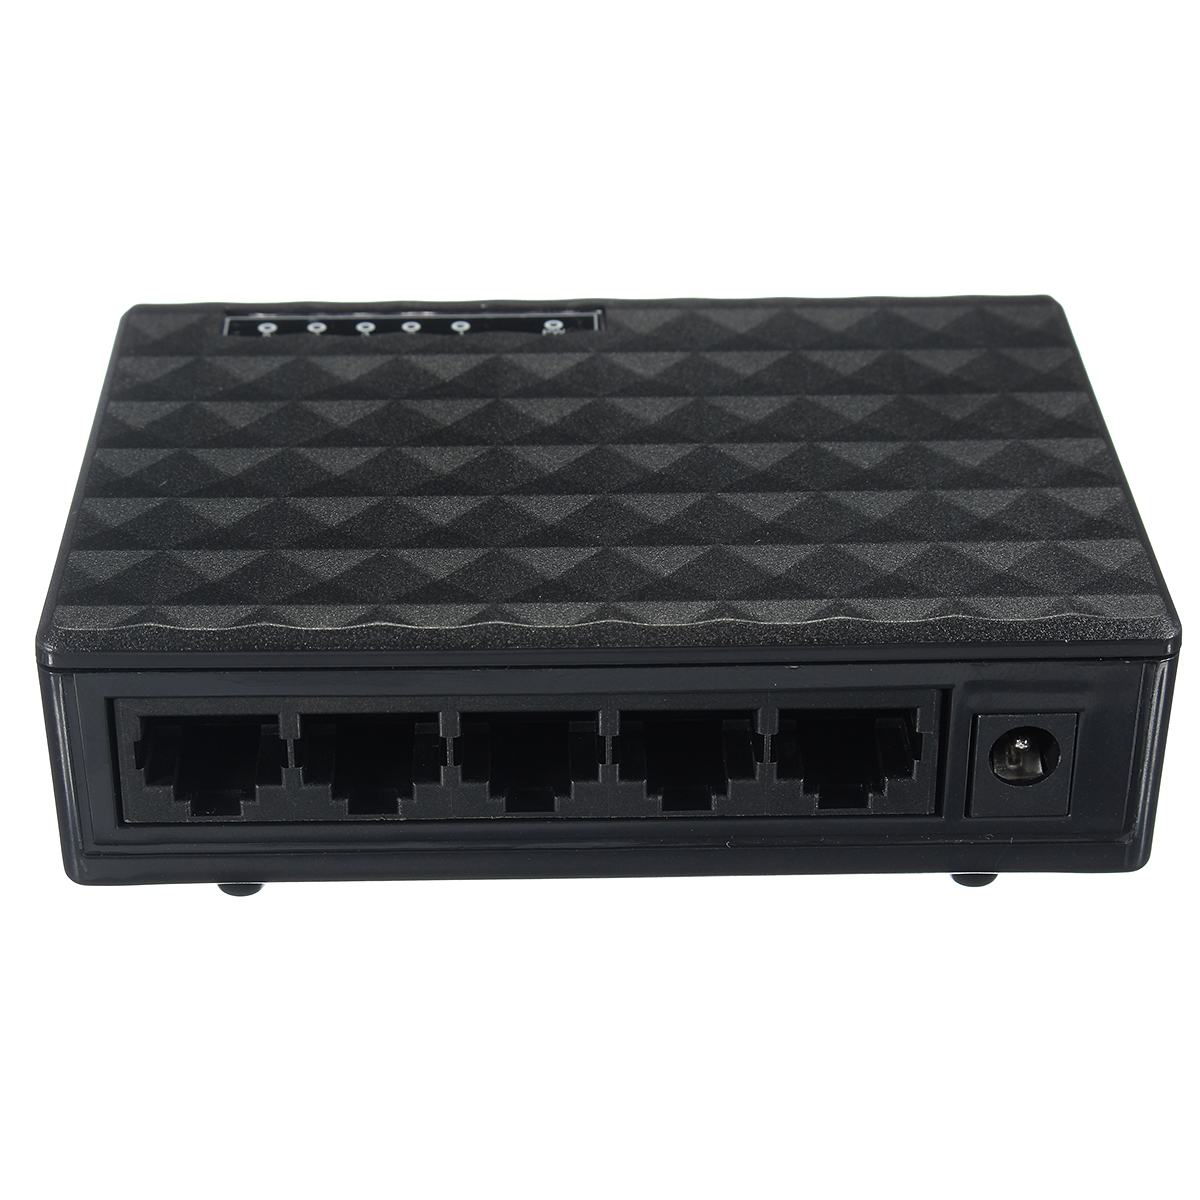 

RJ45 5-портовый сетевой коммутатор Ethernet 10/100 Мбит / с. Автоматический концентратор MDI / MDIX.